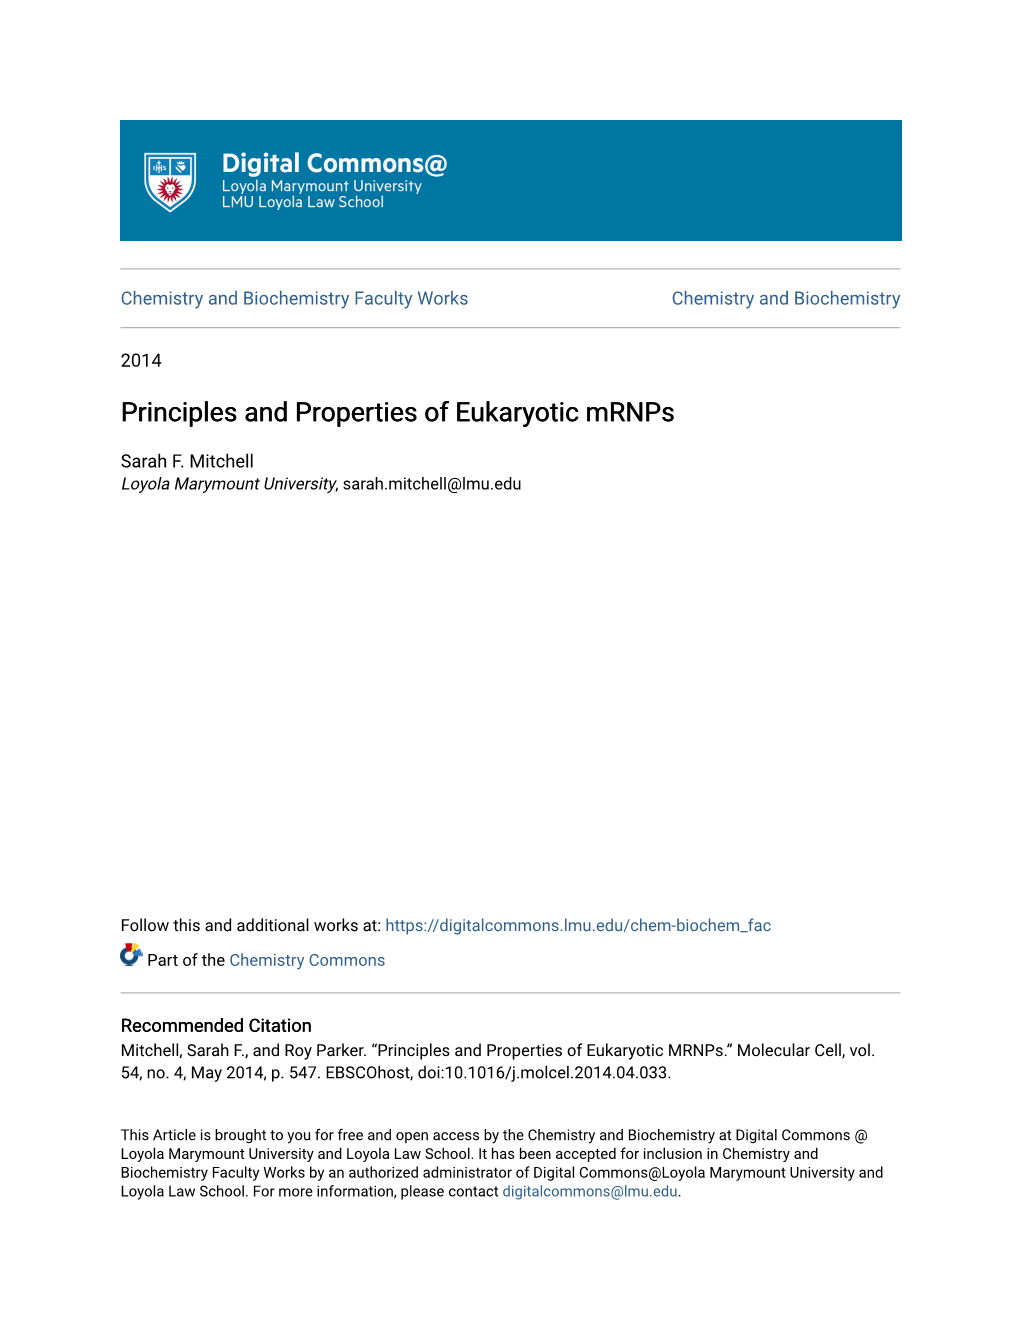 Principles and Properties of Eukaryotic Mrnps